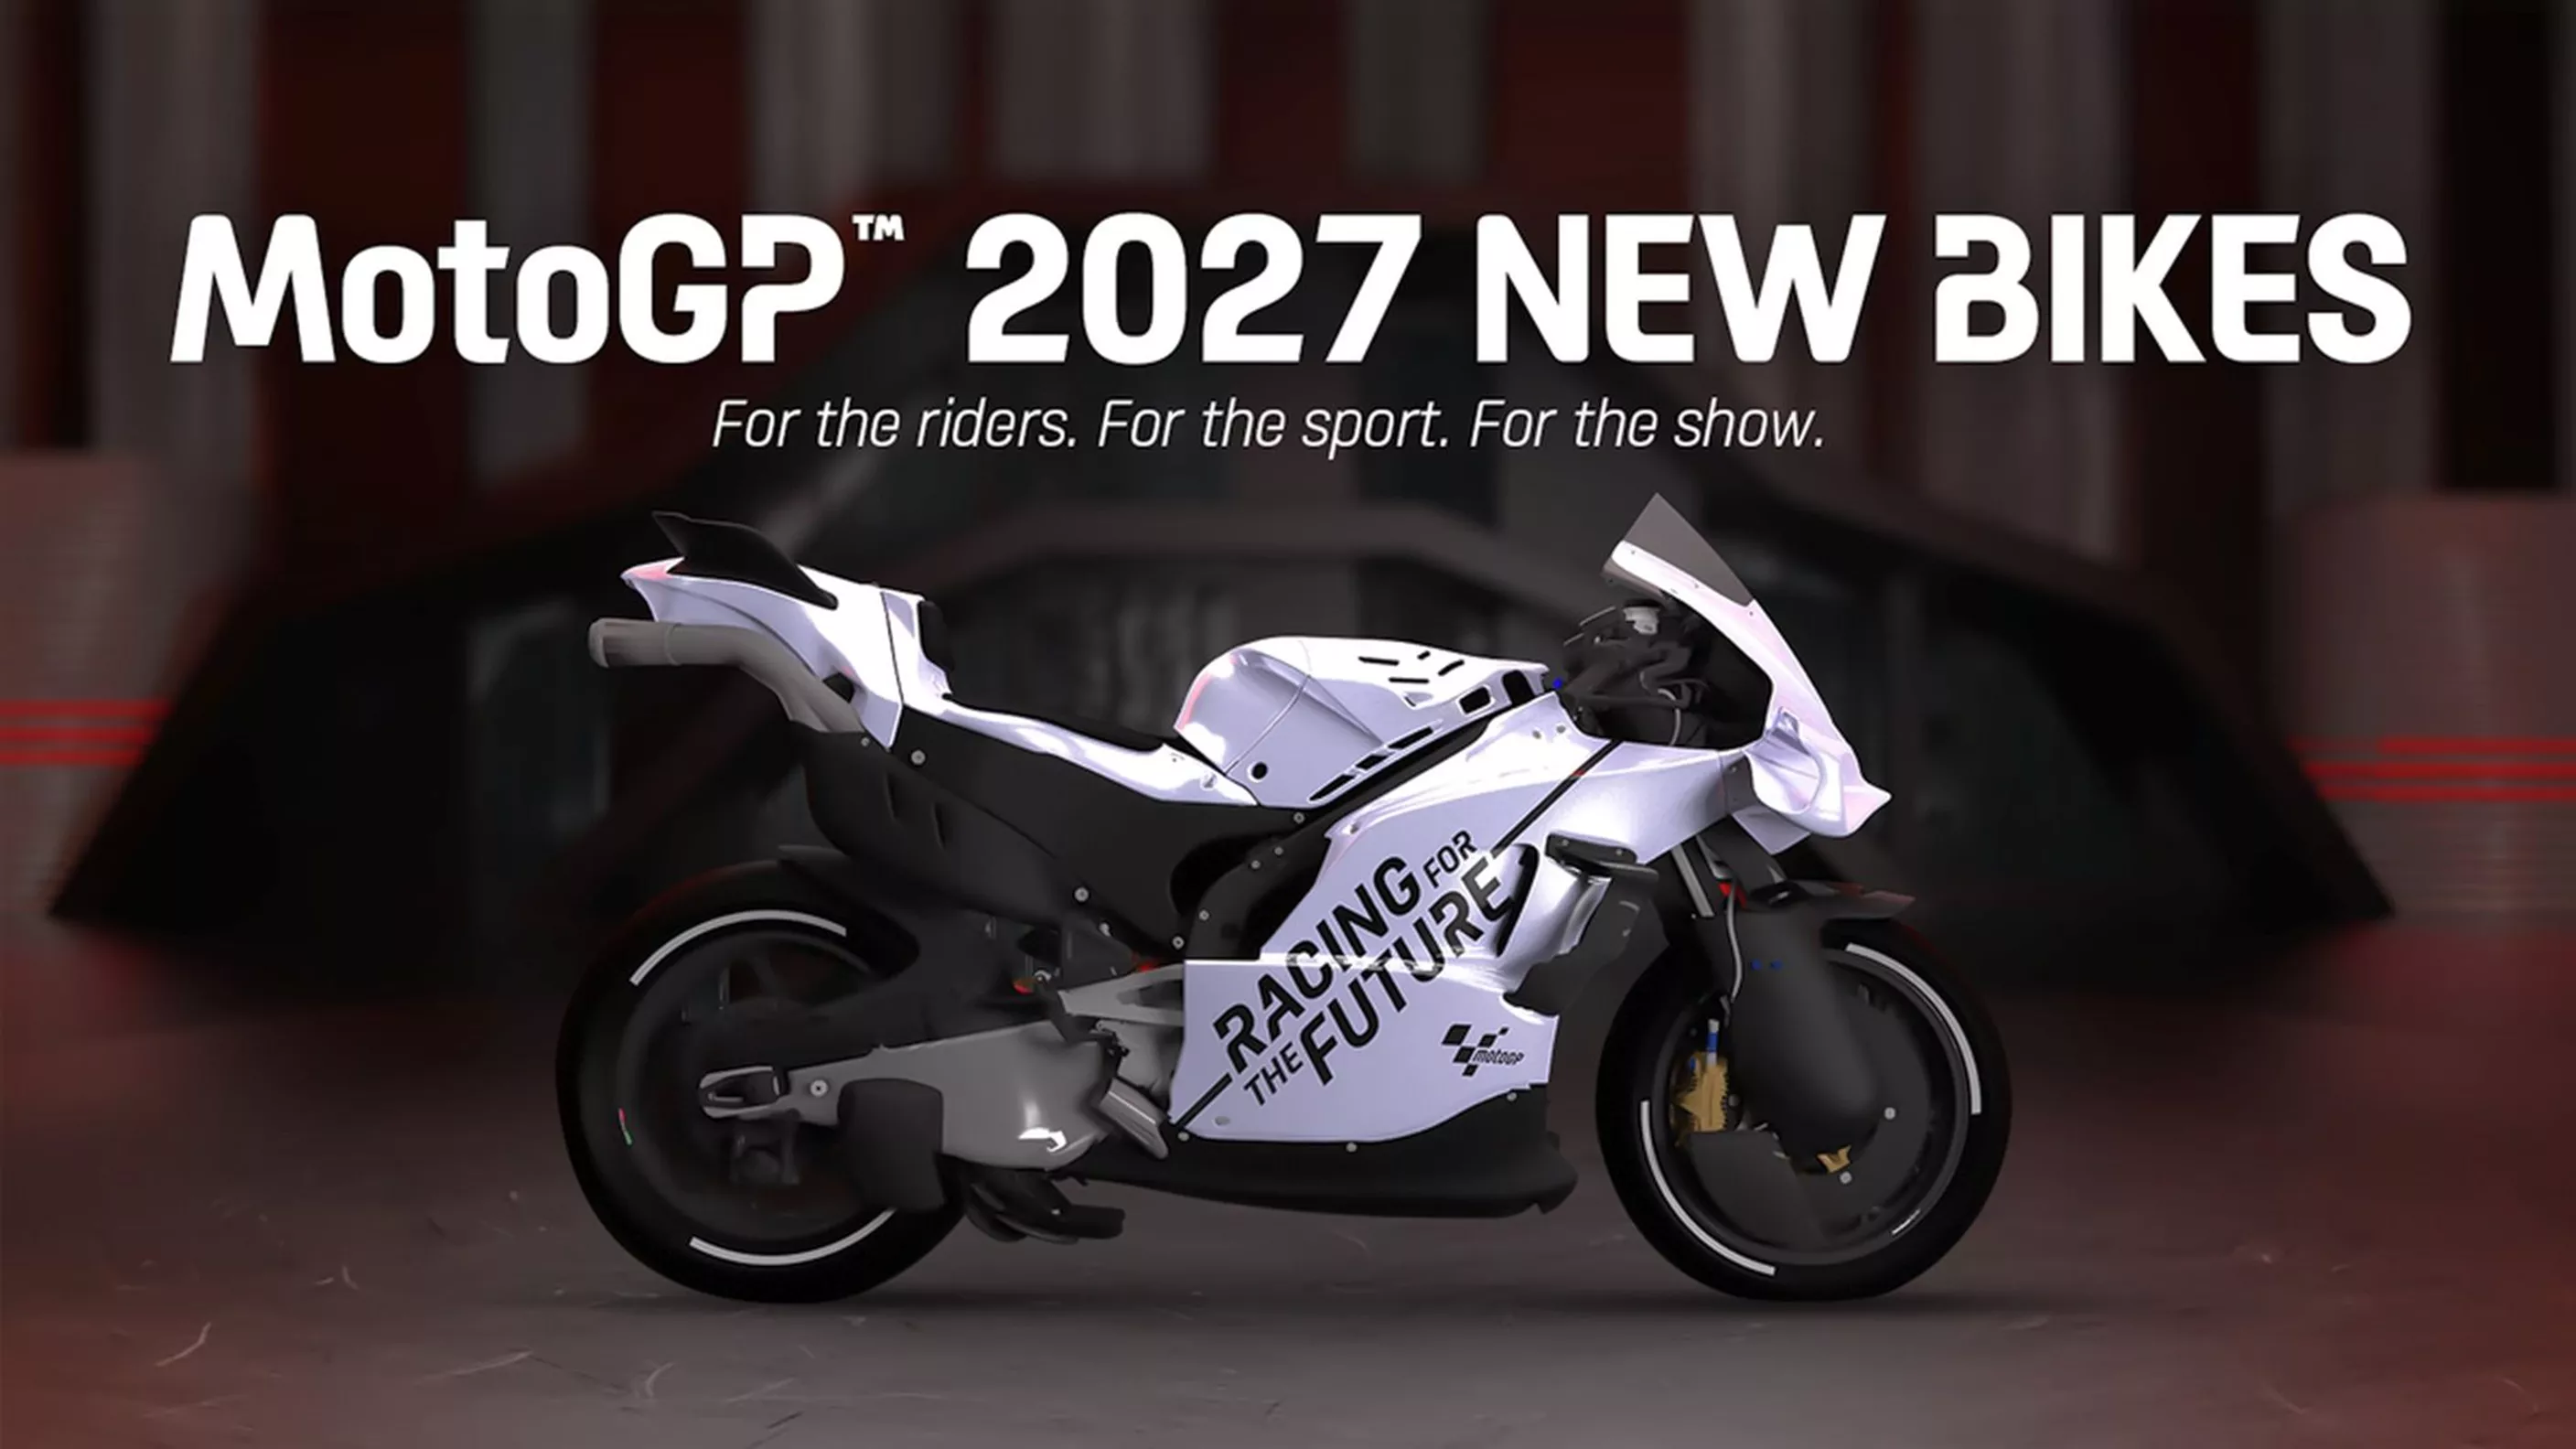 MotoGP-reglement 2027 - Minder cilinderinhoud, geen rijhoogte